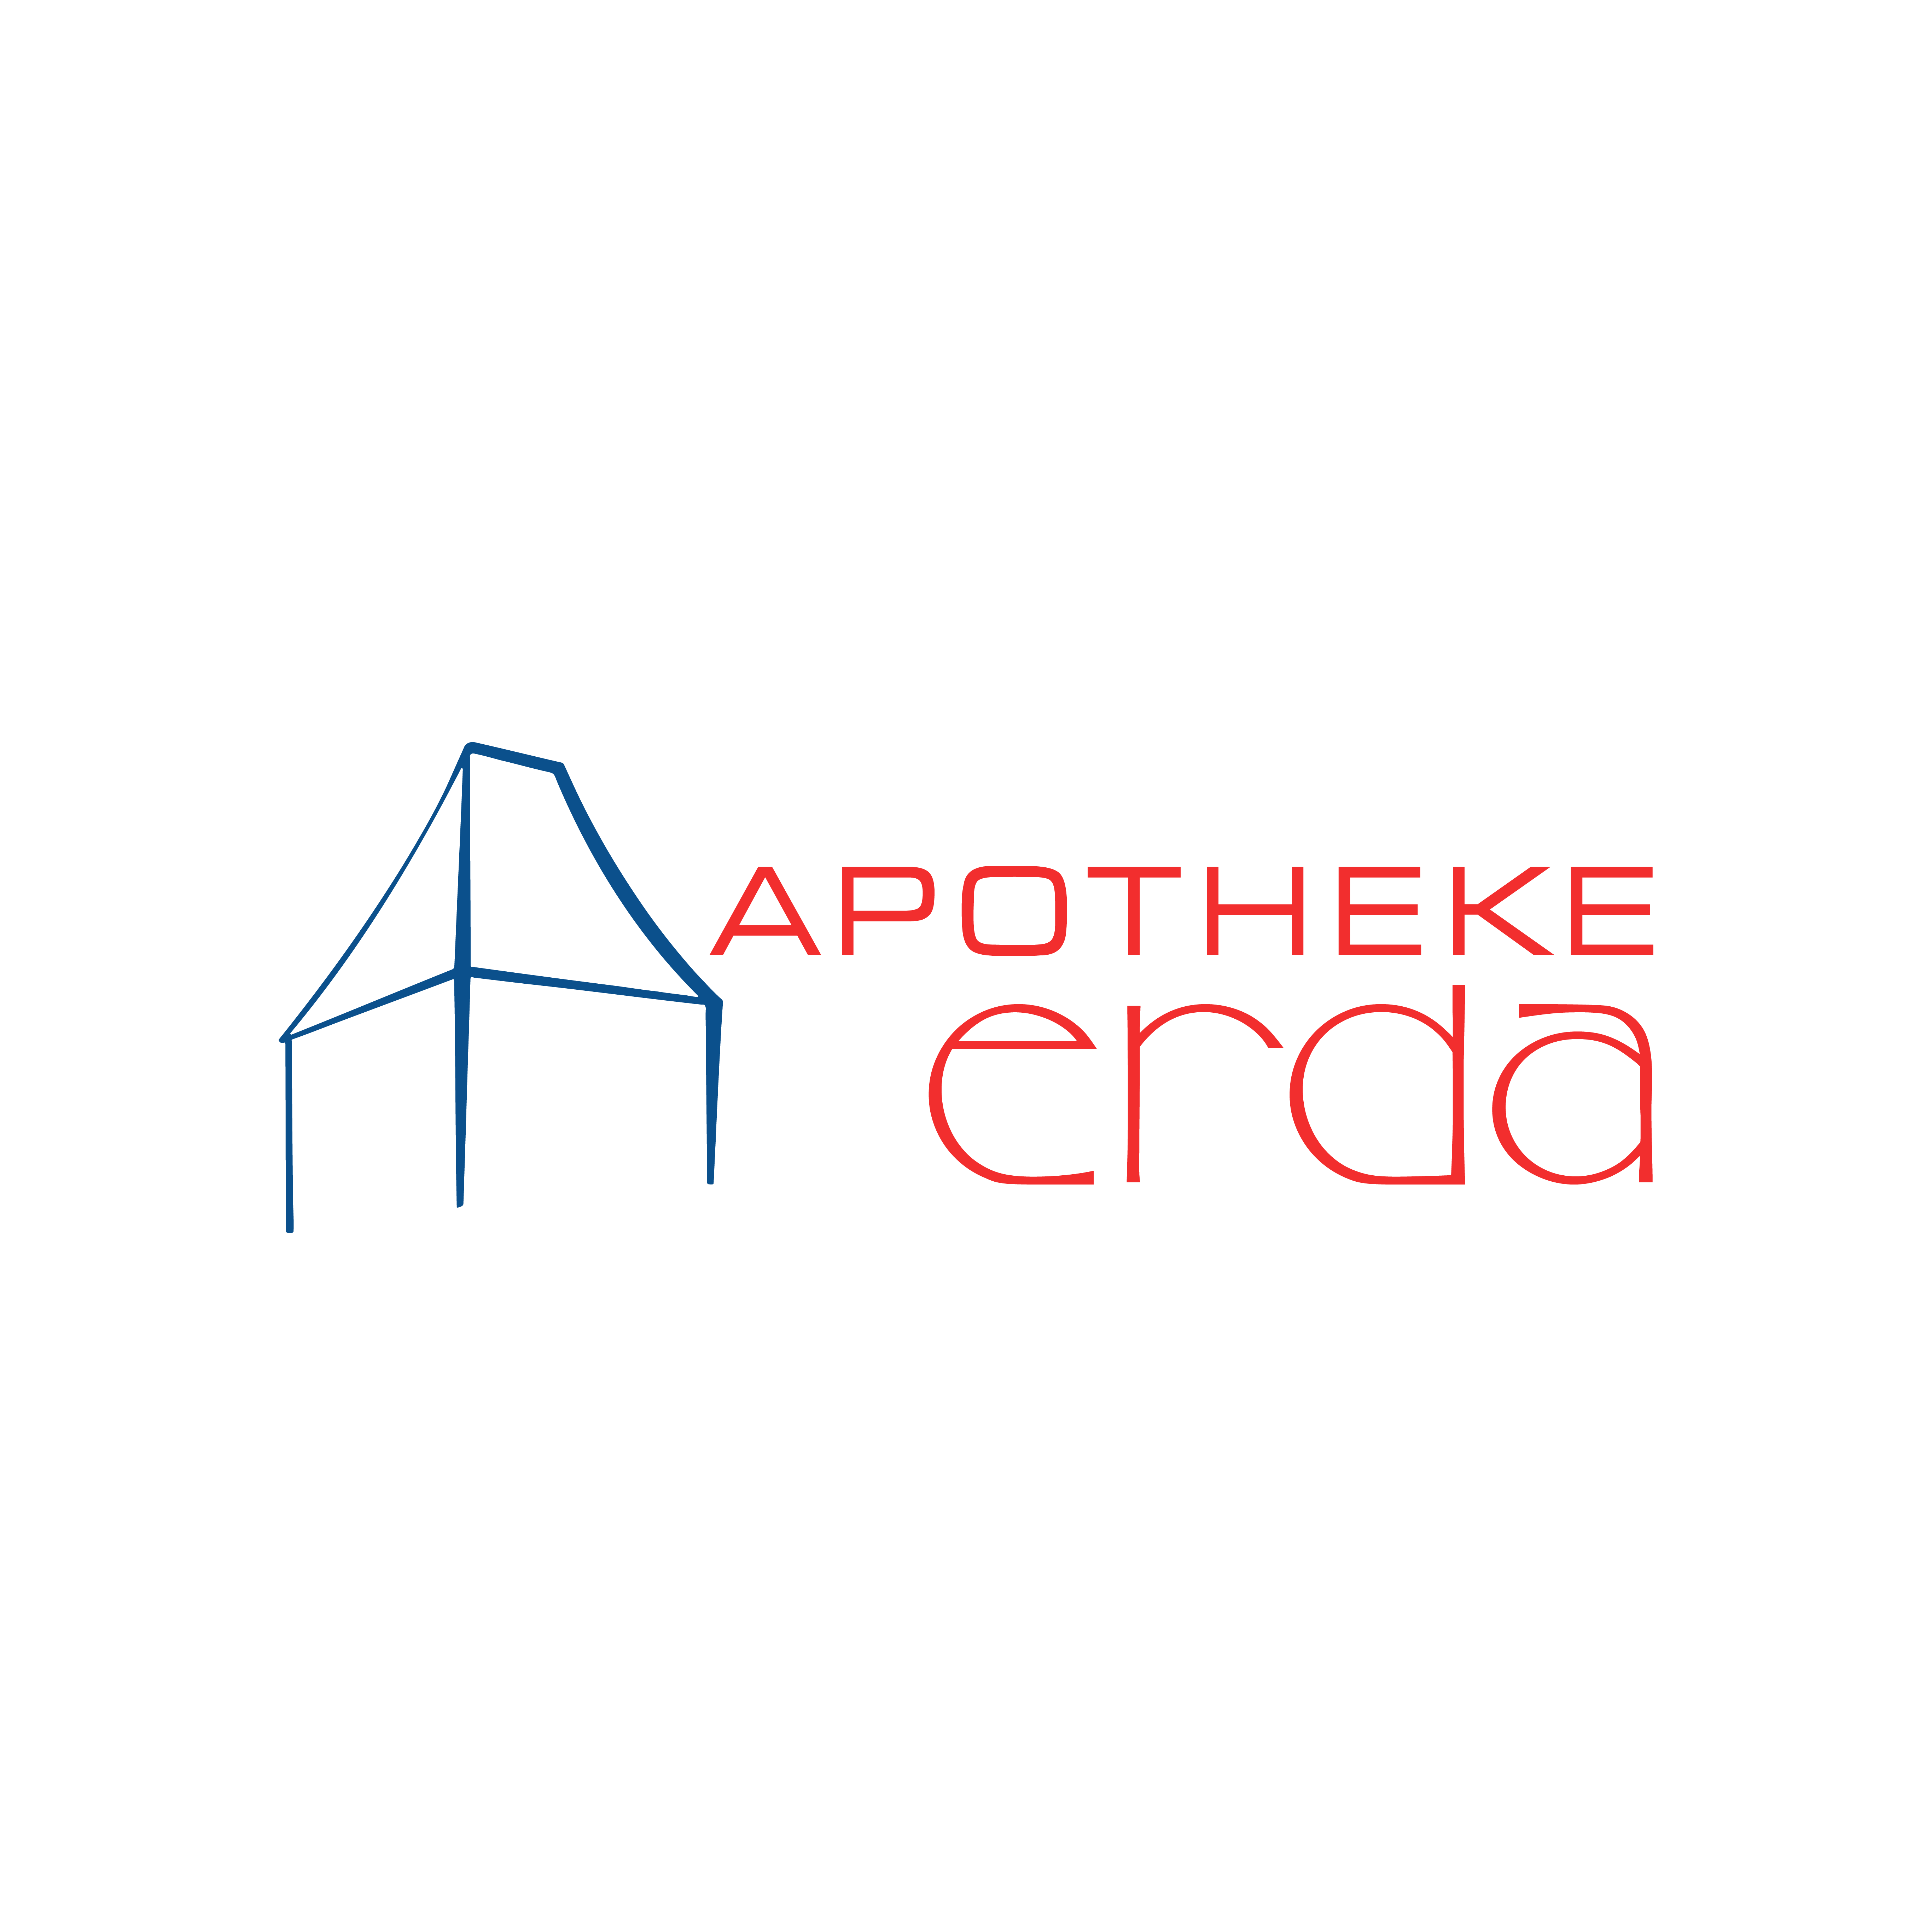 Apotheke Erda Logo